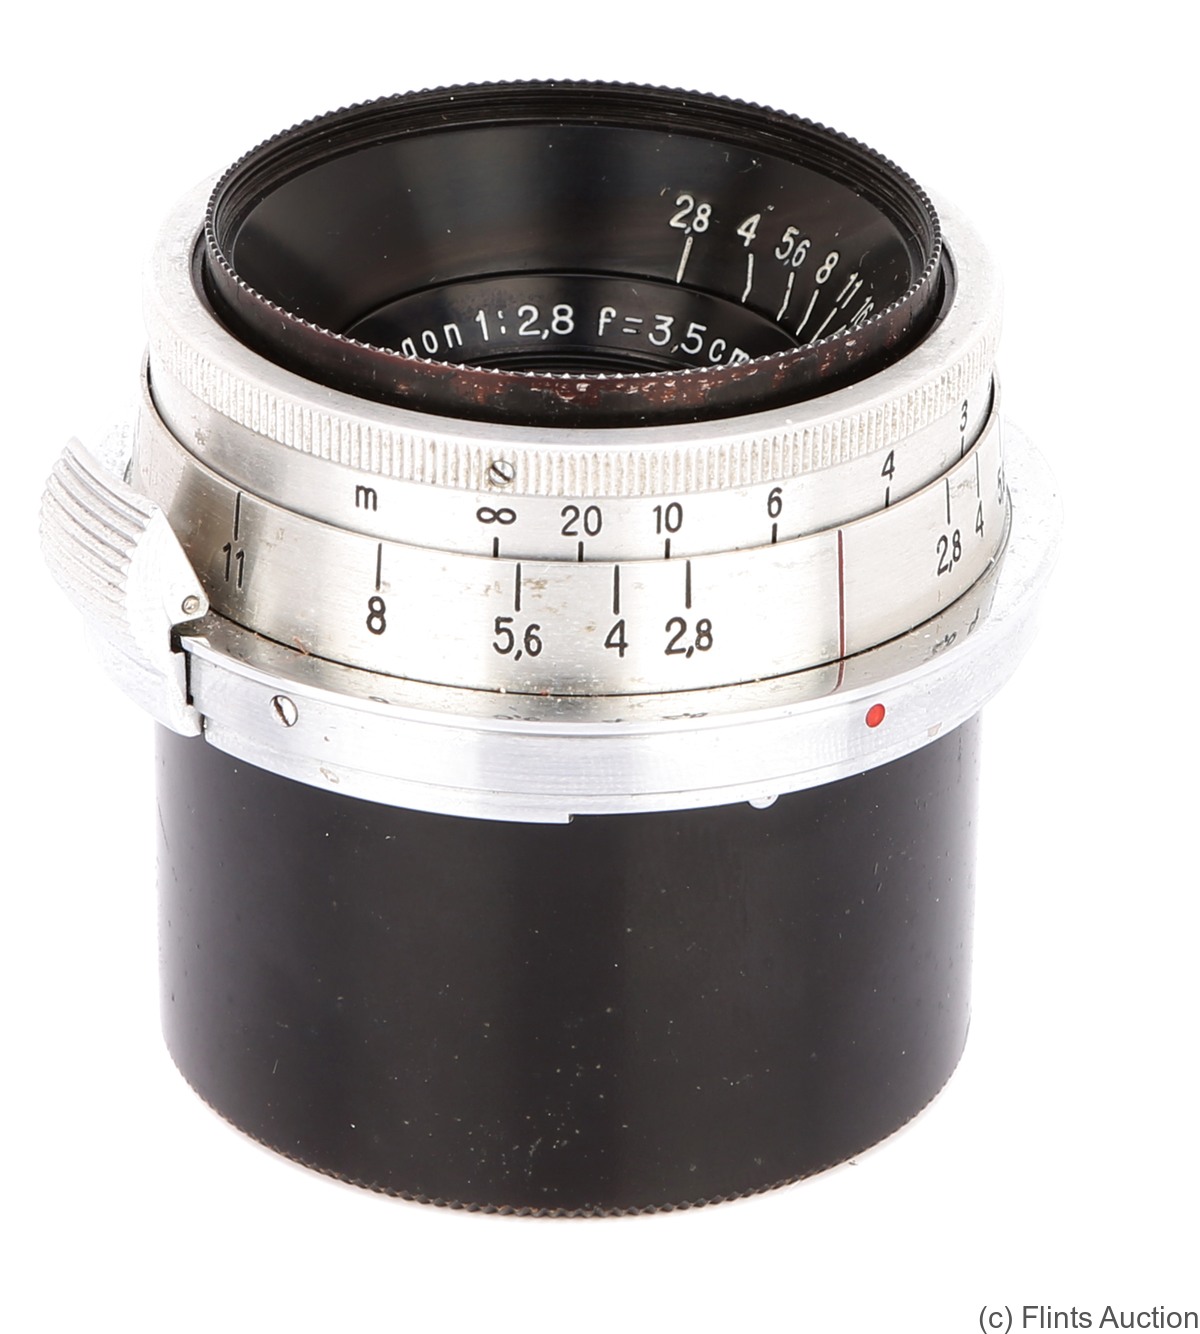 Zeiss, Carl Jena: 35mm (3.5cm) f2.8 Biogon T (Contax) camera